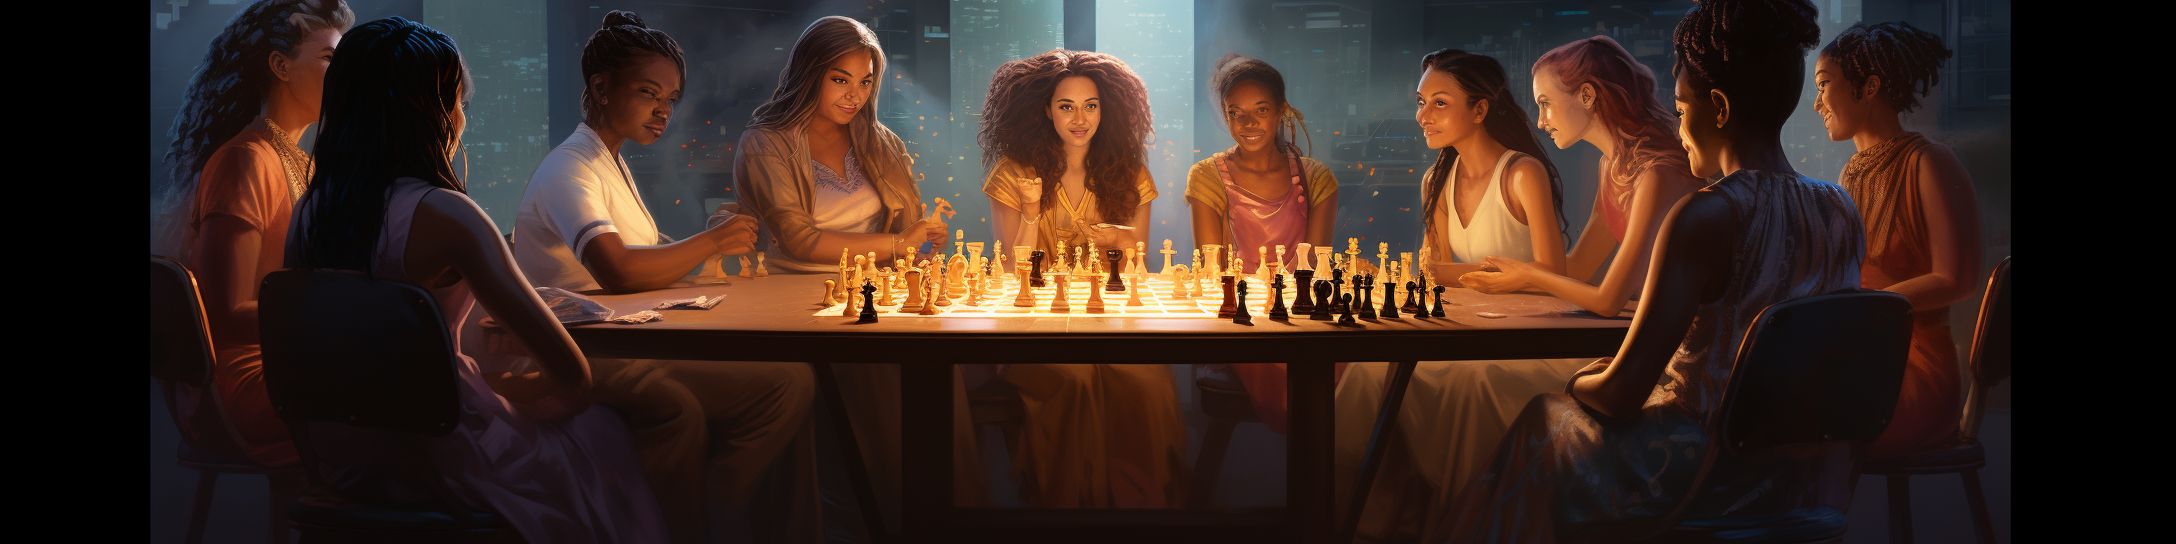 Les femmes participant aux tournois internationaux d'échecs